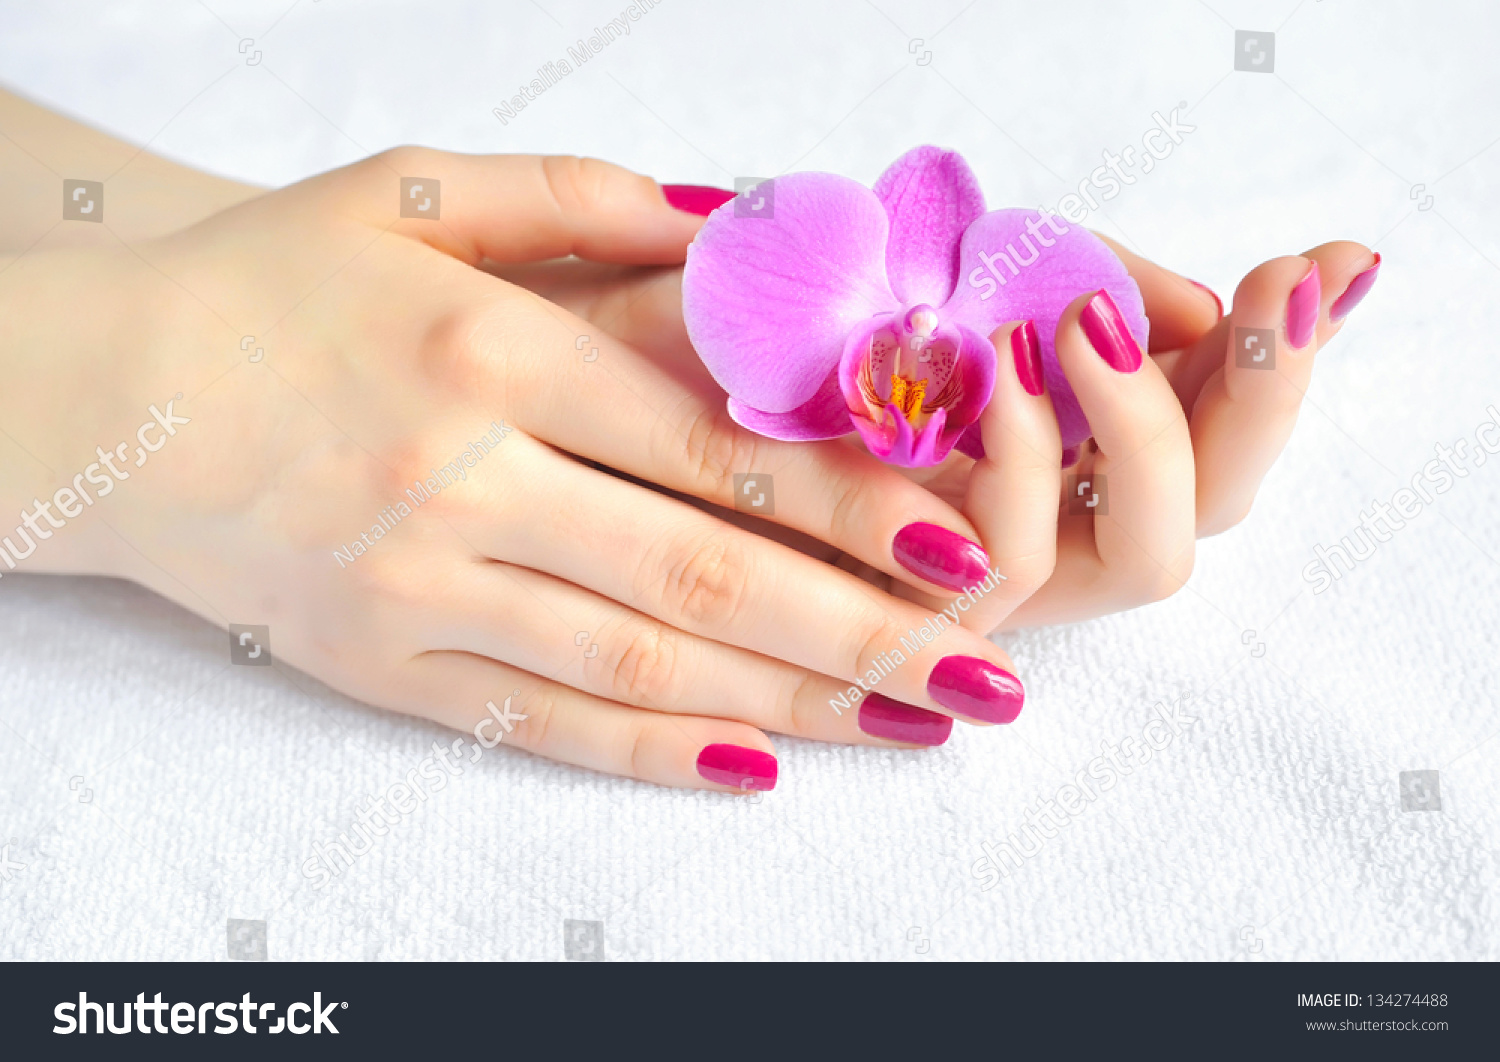 Ногти на руках красивые с цветами